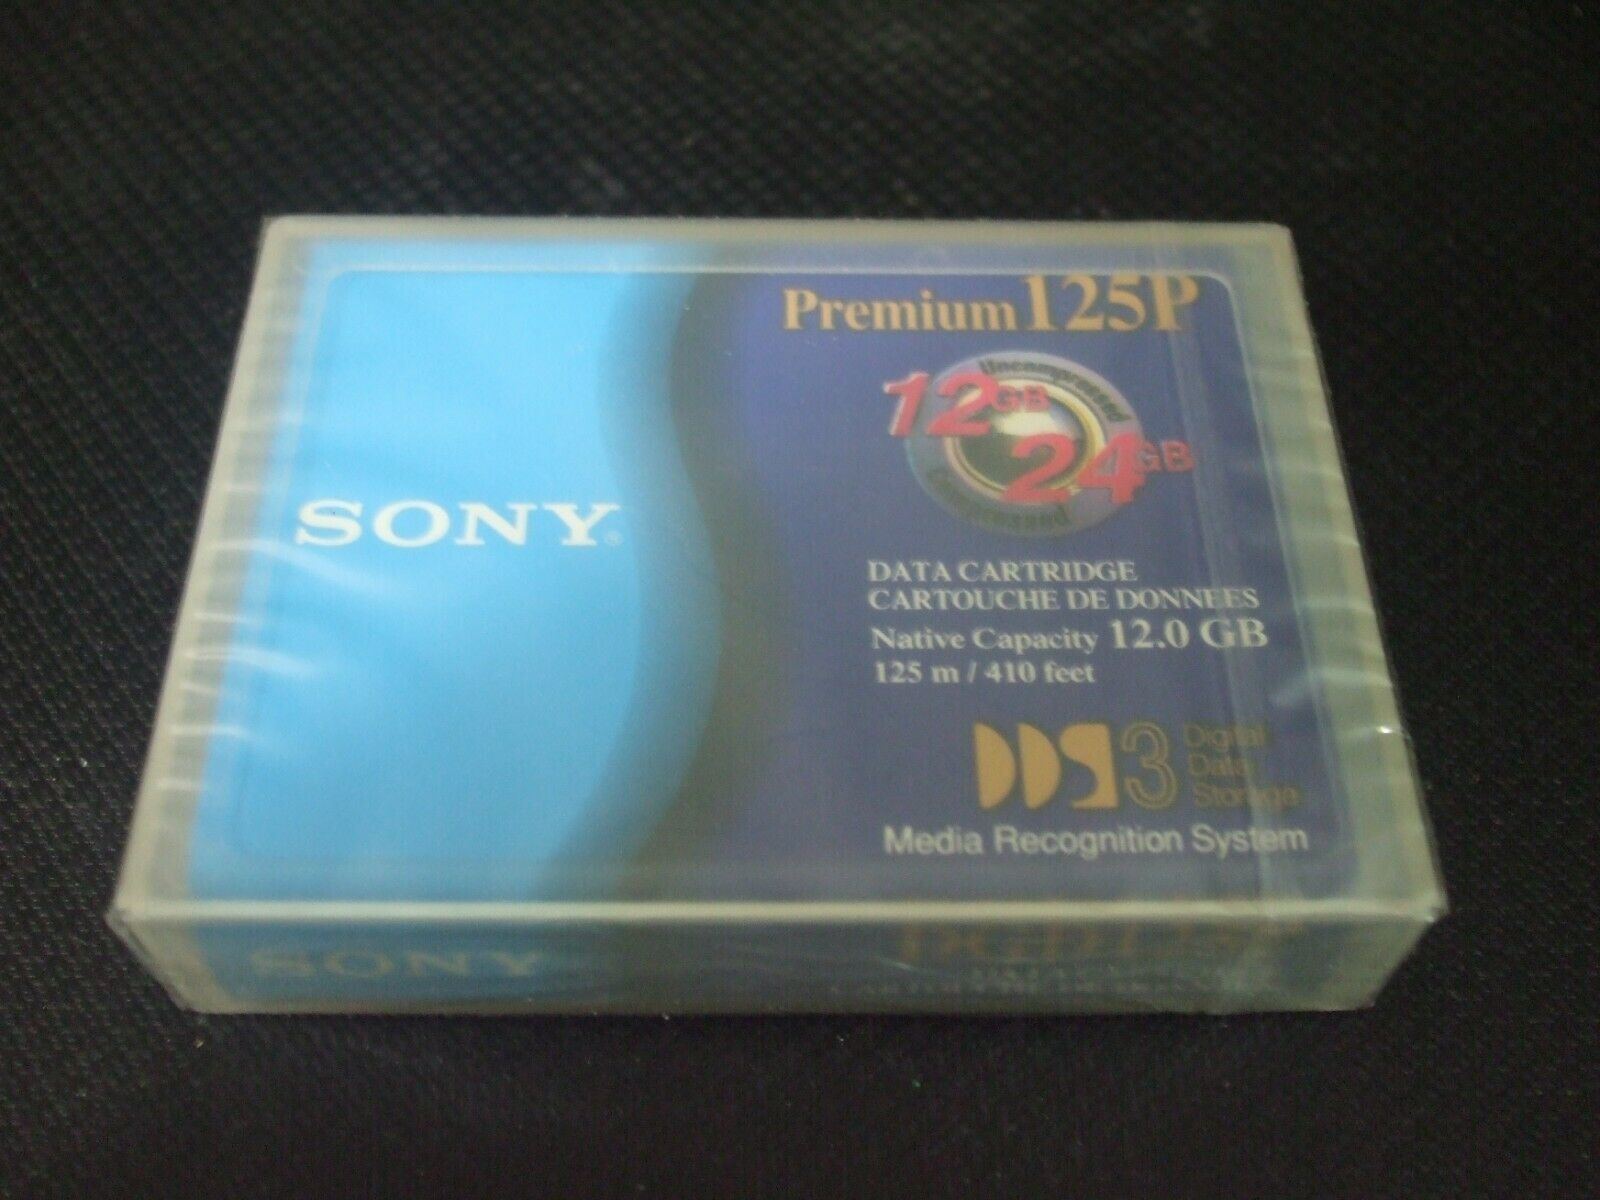 Sony DGD125P Premium 125P Data Cartridge Tape - Brand New!!! - $9.32